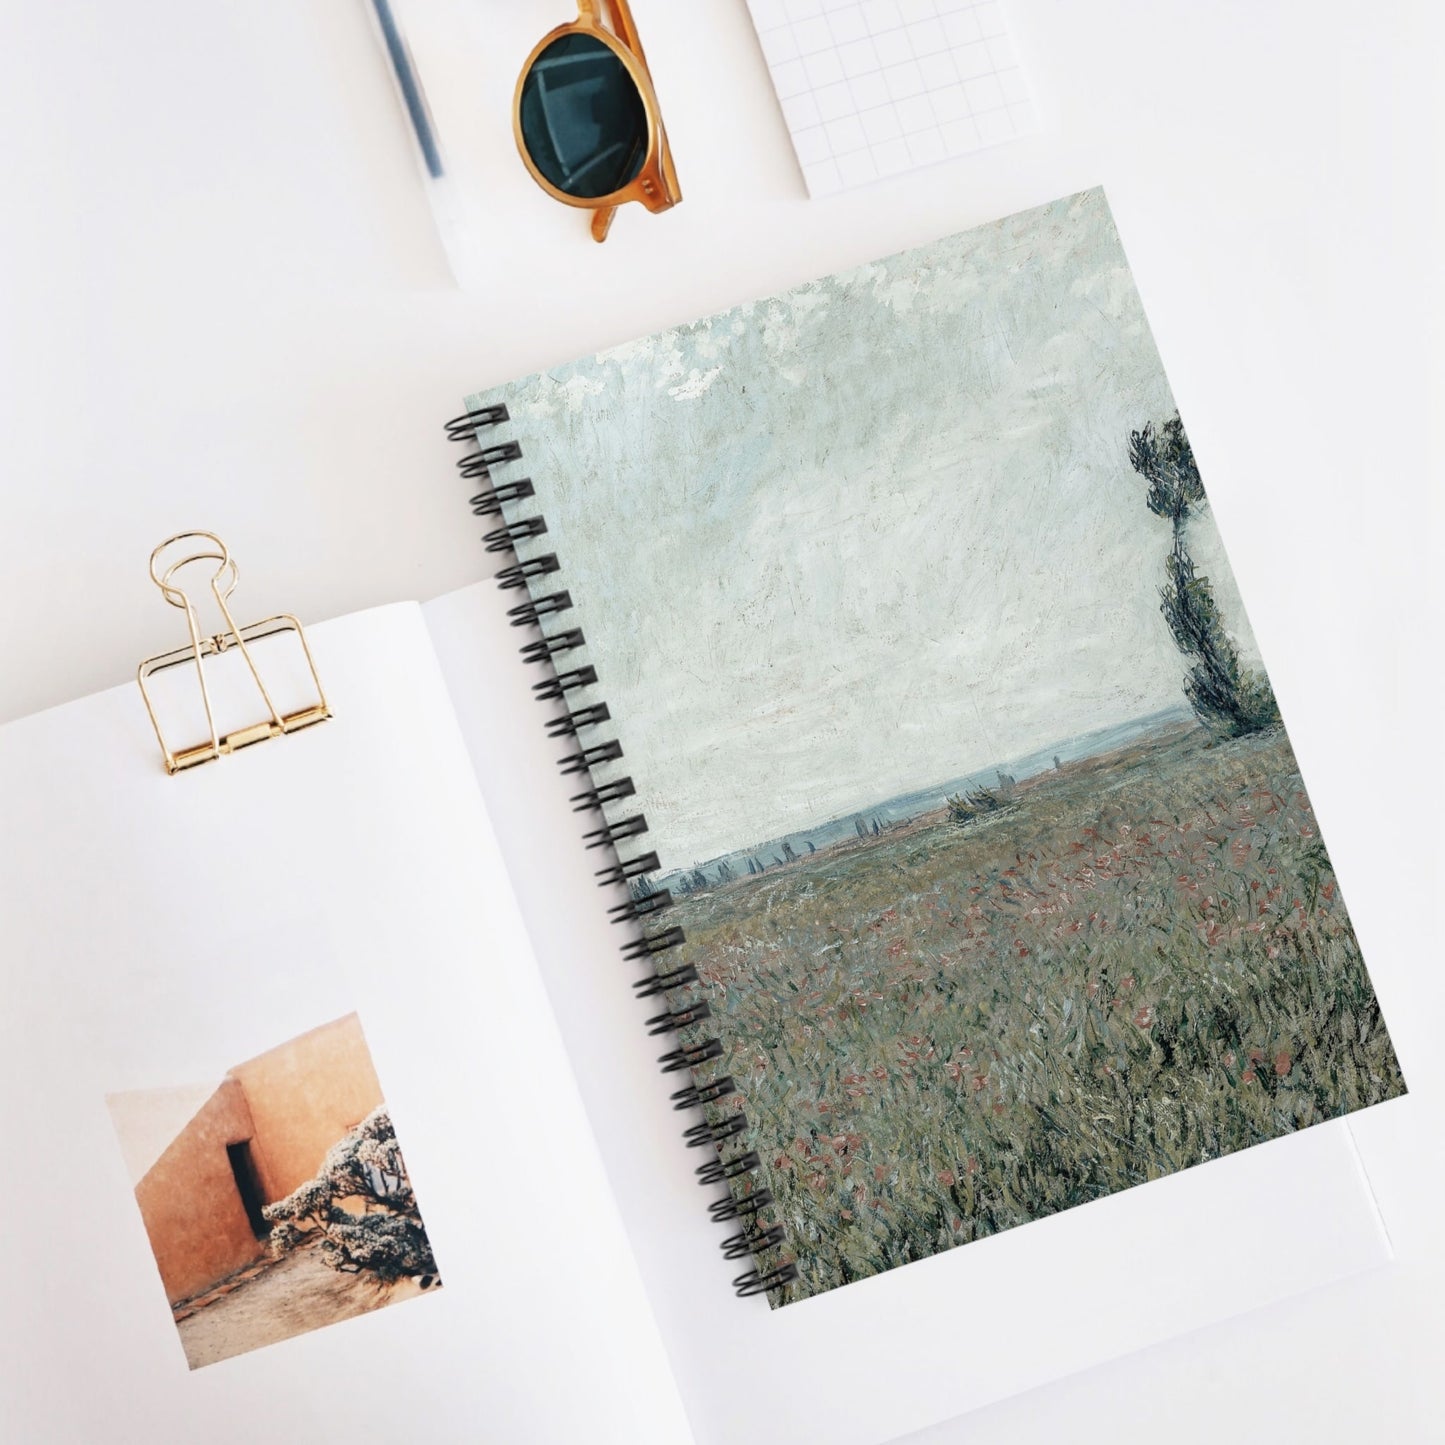 Tranquil Landscape Spiral Notebook Displayed on Desk